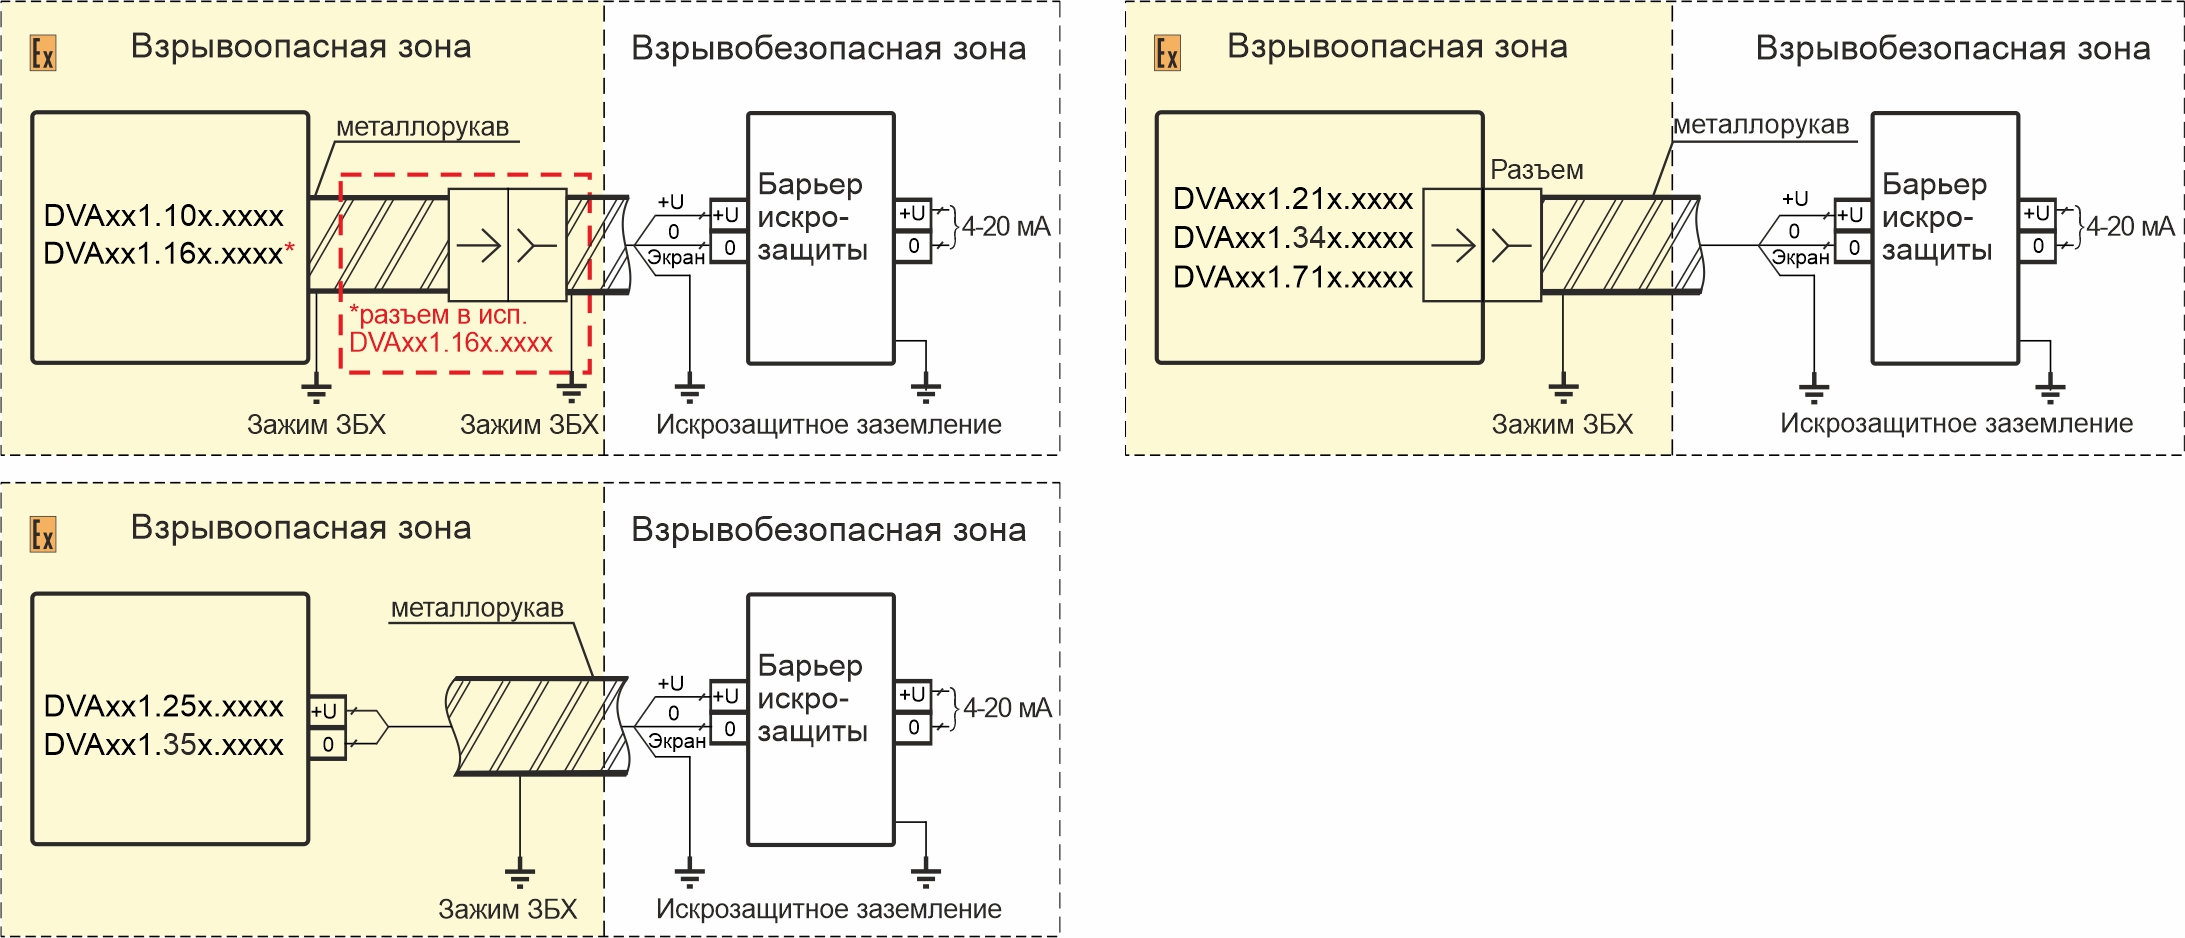 Схемы подключения вибропреобразователей DVA141.XXX